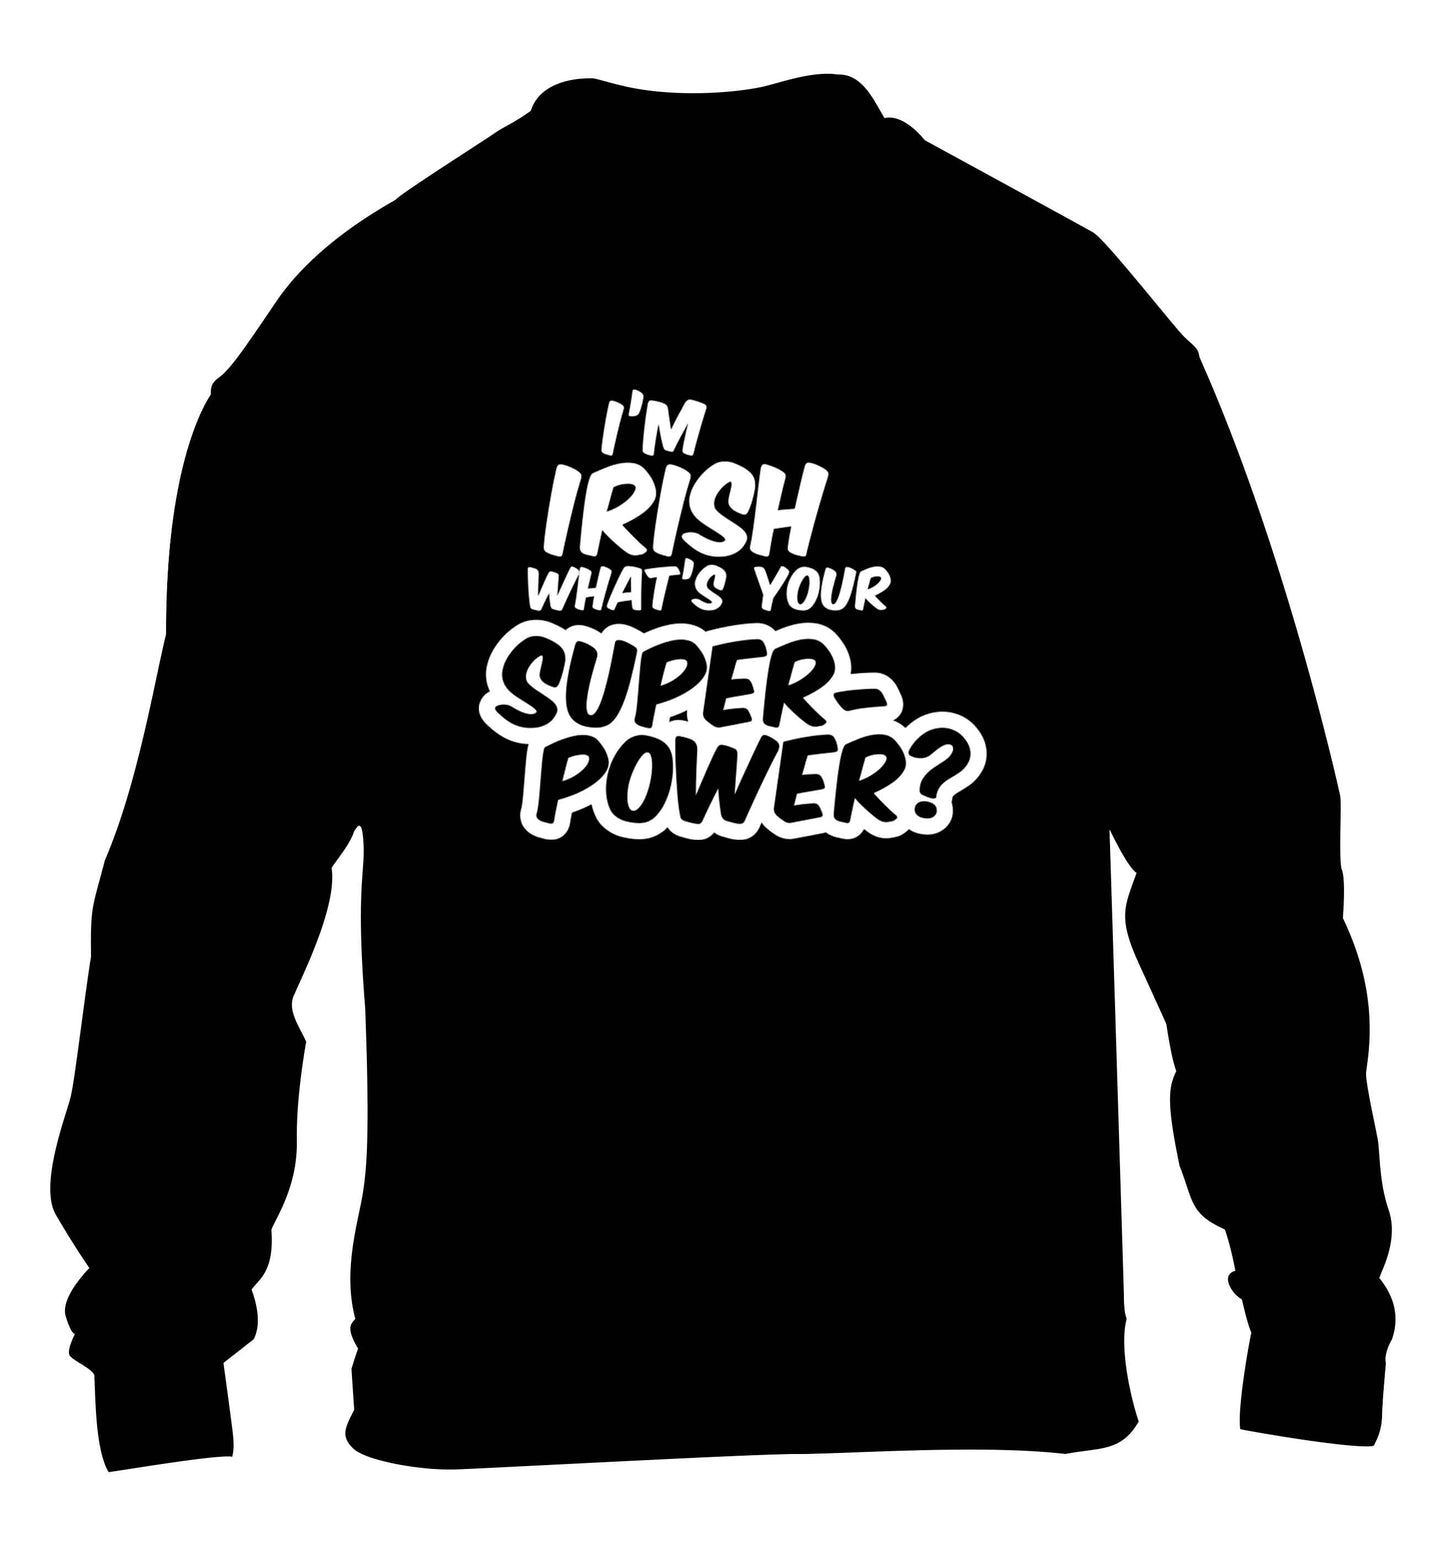 I'm Irish what's your superpower? children's black sweater 12-13 Years